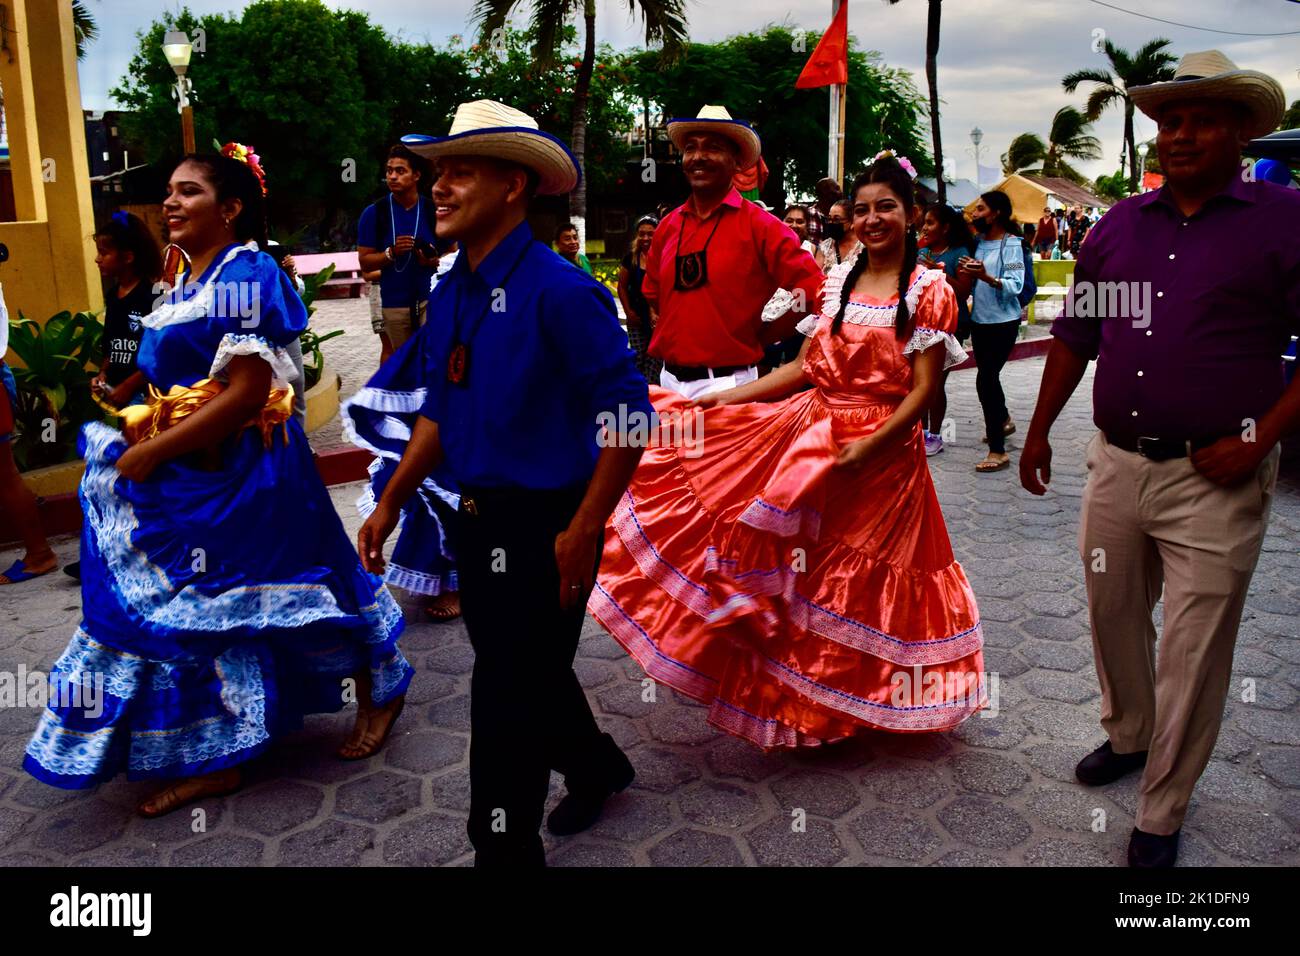 Vestido tradicional de honduras fotografías e imágenes de alta - Alamy